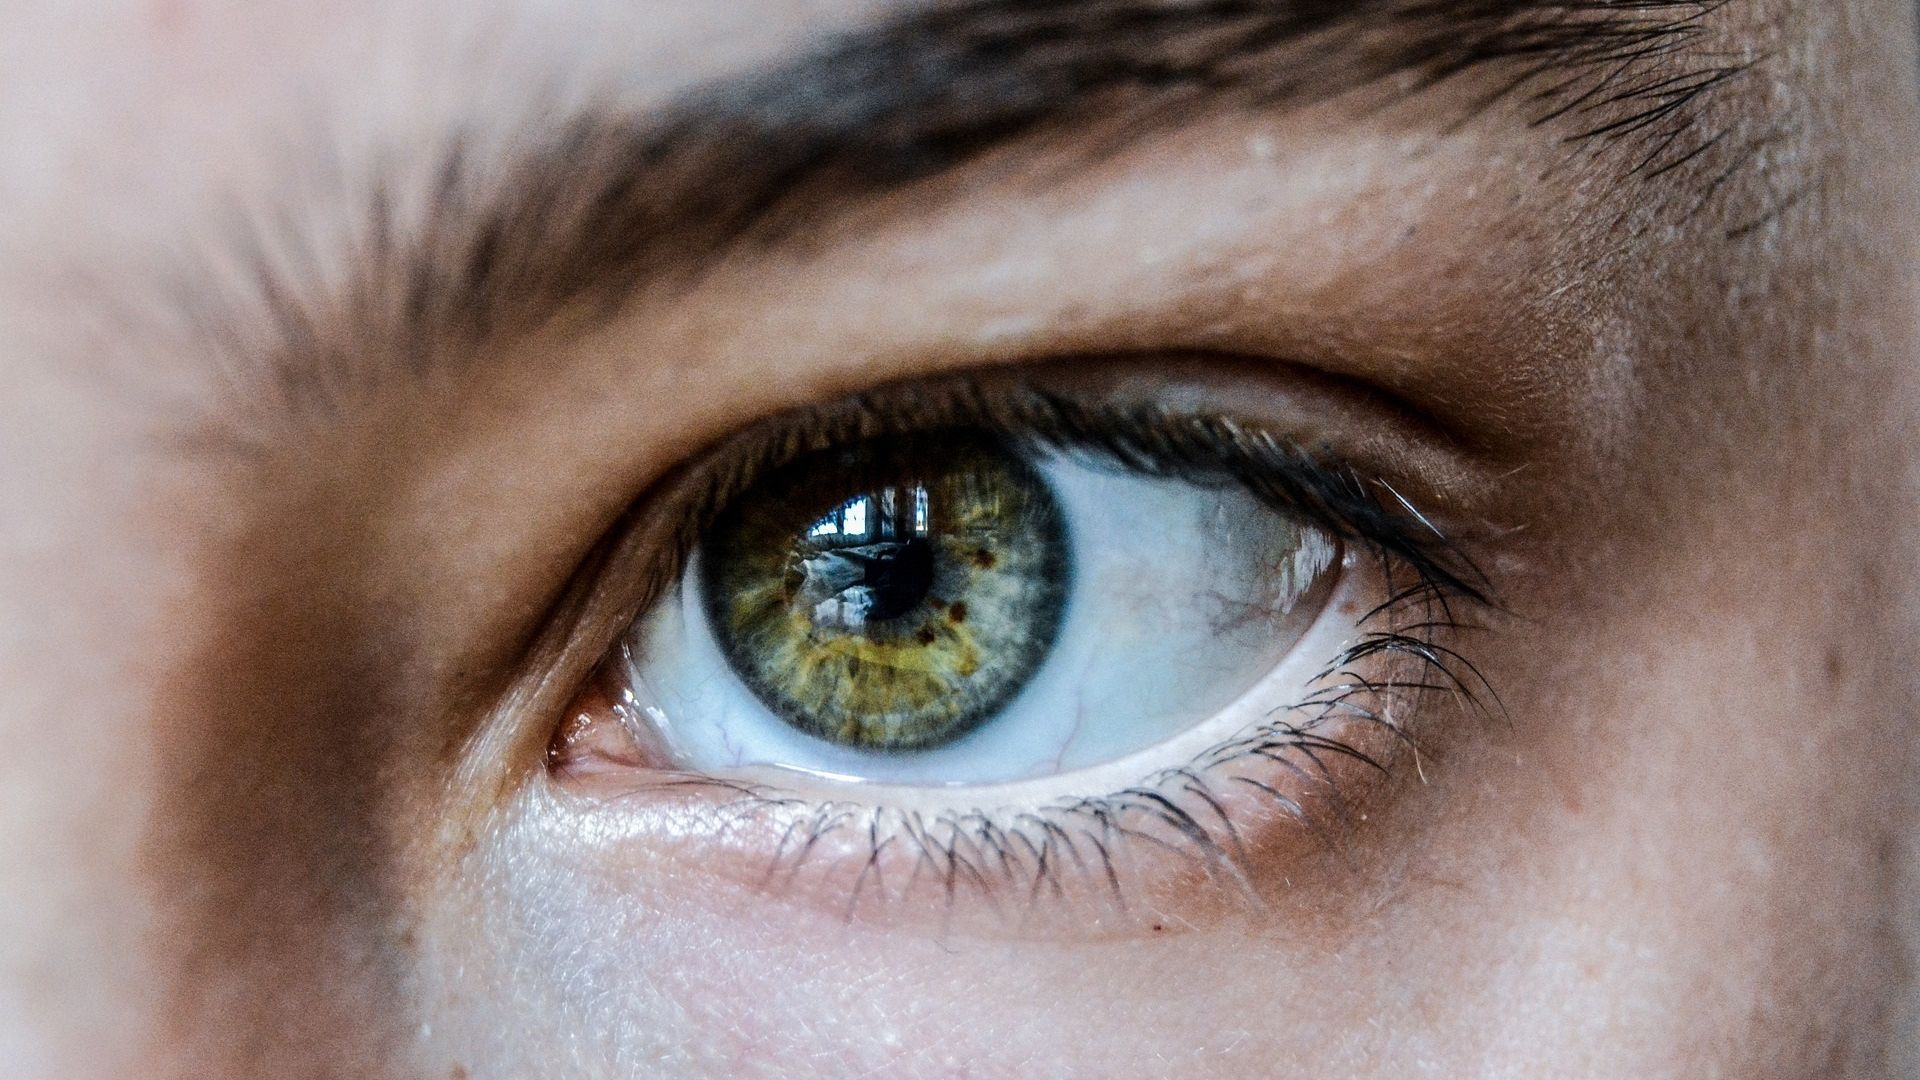 Białka ludzkich oczu są cechą ewolucyjną związaną z językiem